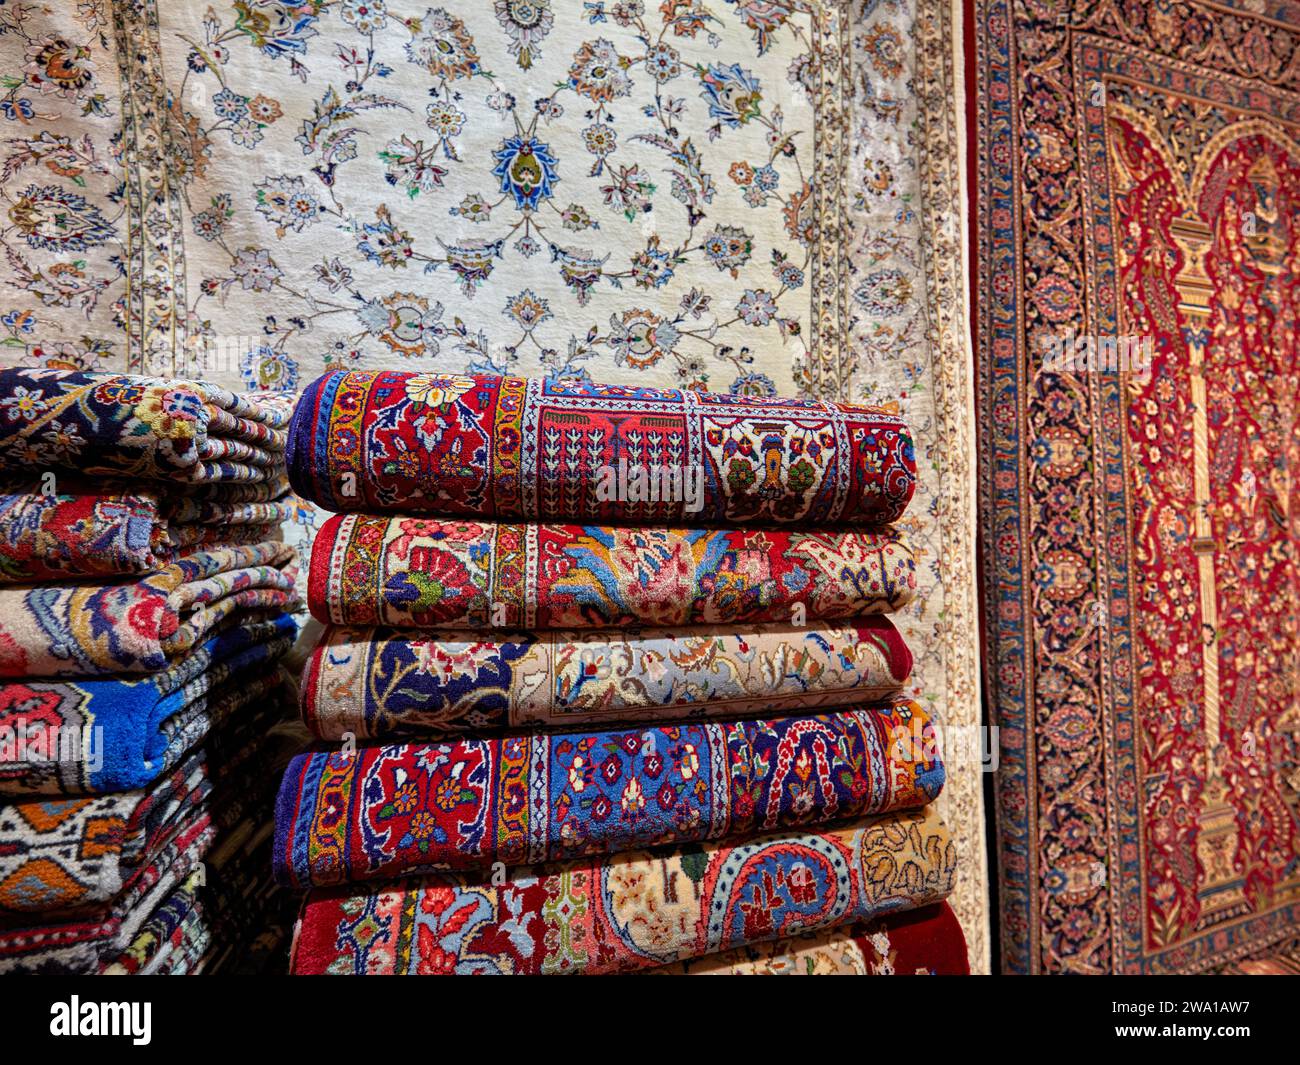 Sélection colorée de tapis persans faits à la main dans une boutique de l'Aminoddole Caravanserai, structure historique dans le Grand Bazar de Kashan, Iran. Banque D'Images